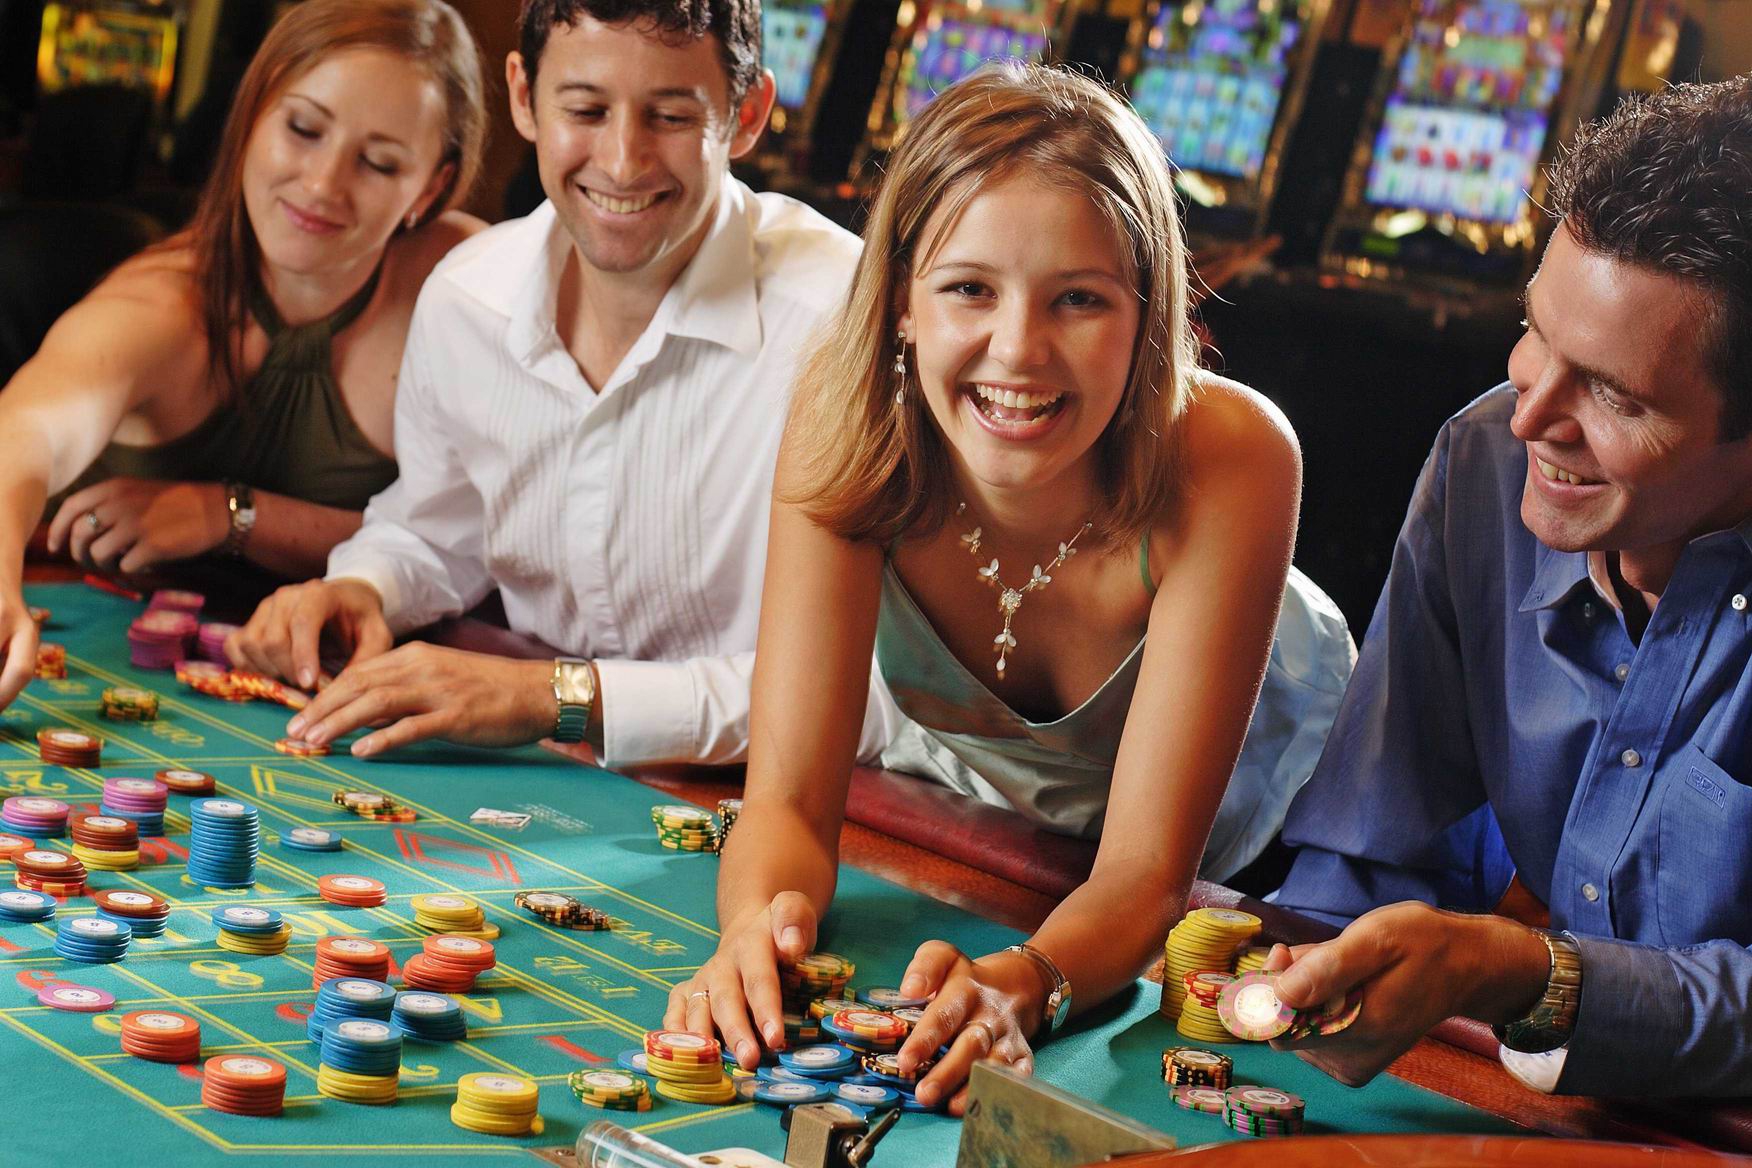 The online casino агата и сыск рулетка судьбы онлайн